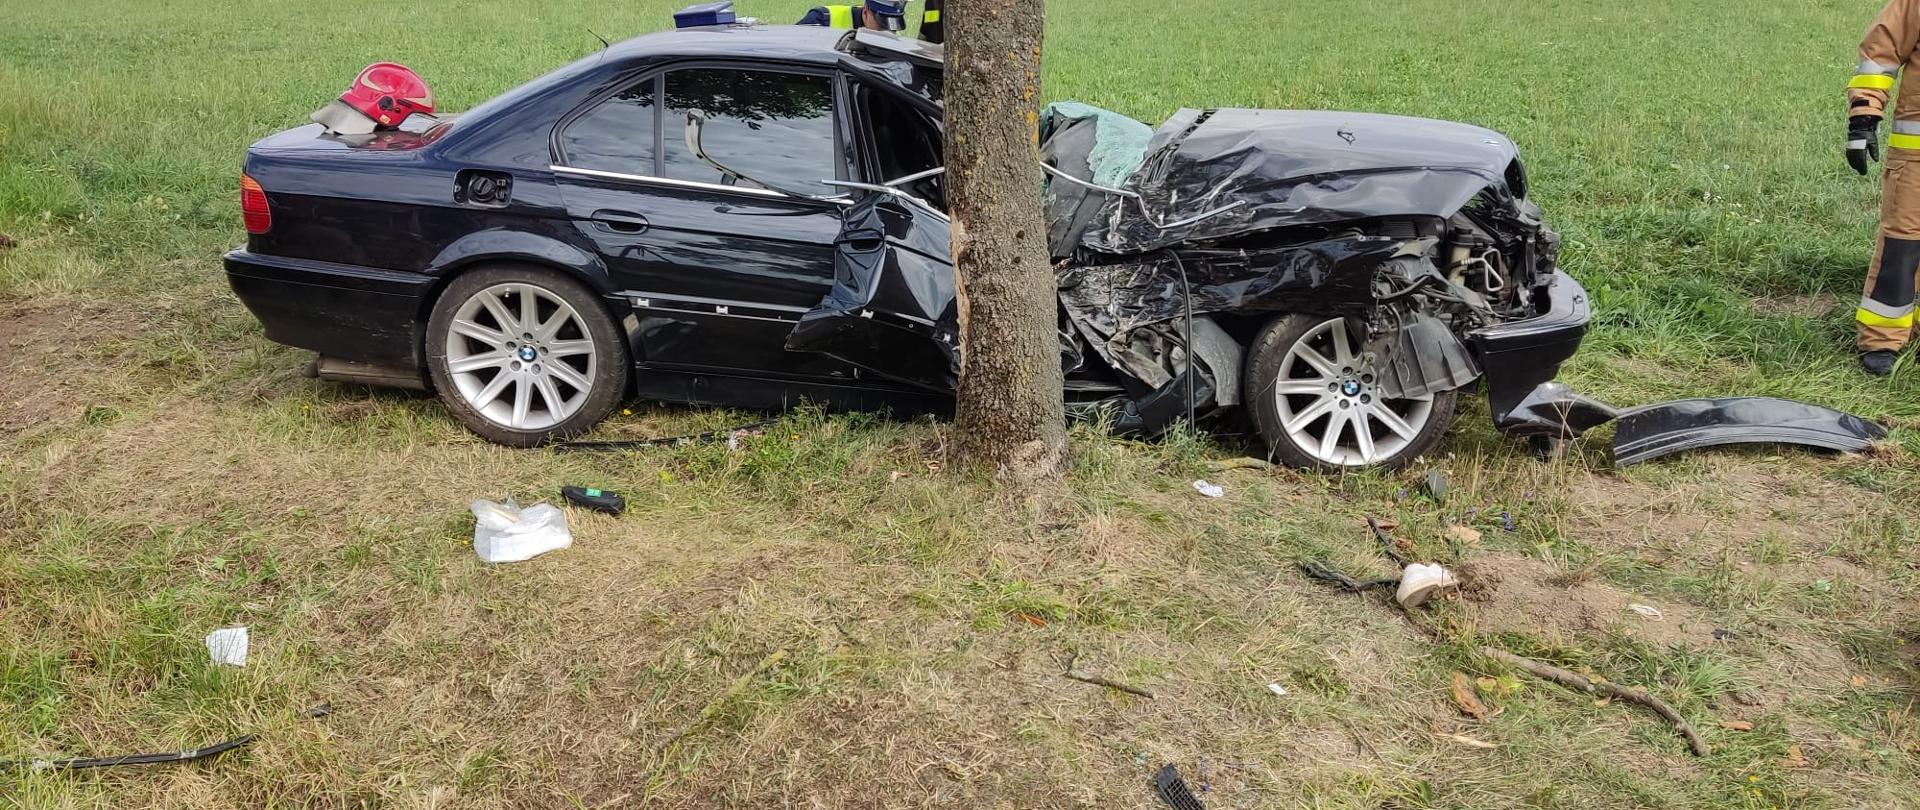 Wypadek w miejscowości Zygmuntowo. Rozbity, czarny samochód osobowy marki BMW.